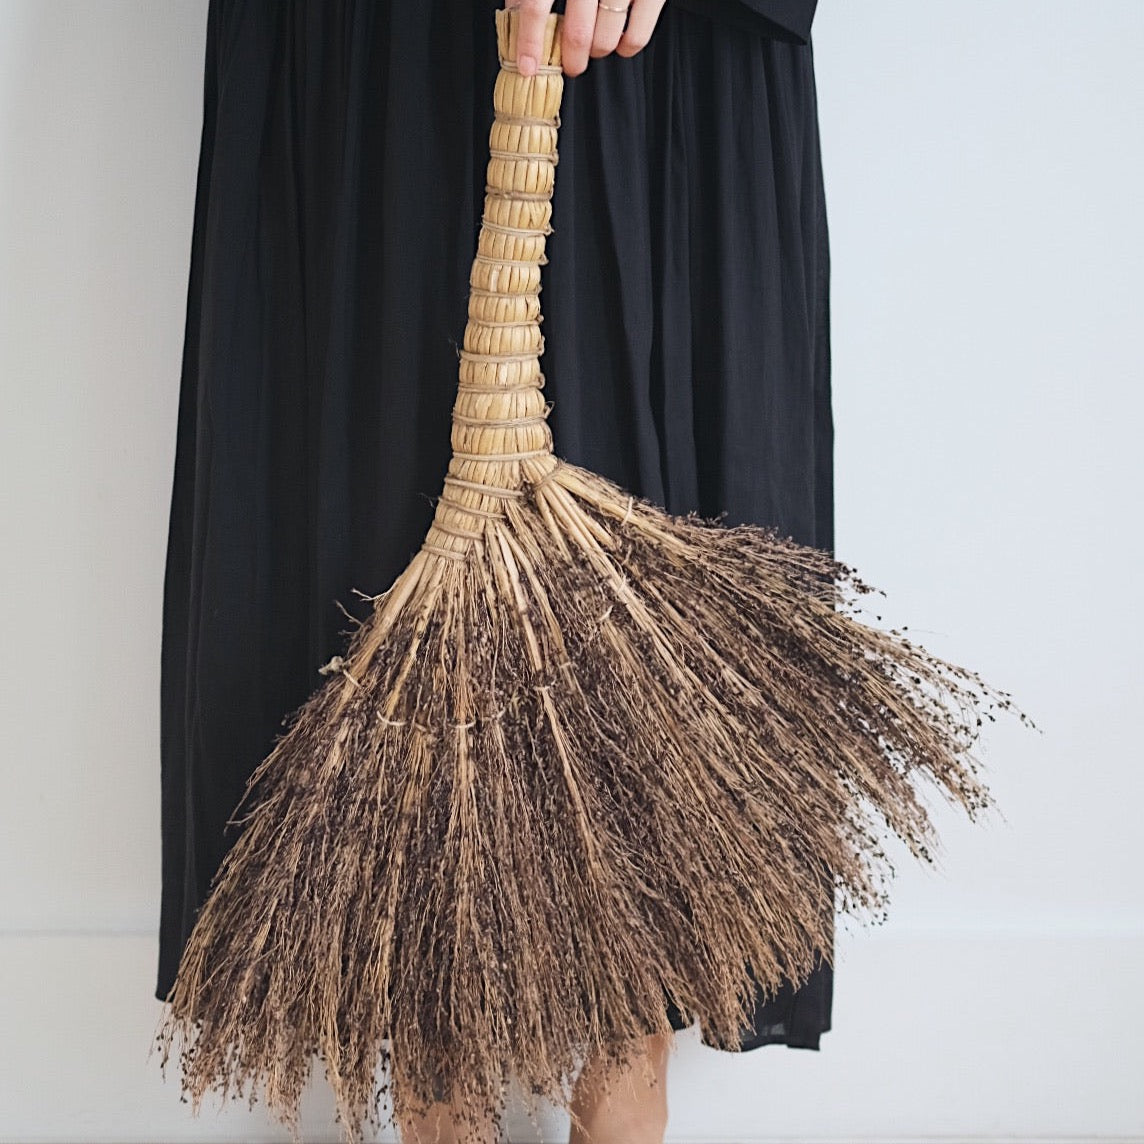 Large Broom Bitjaru - Sorghum